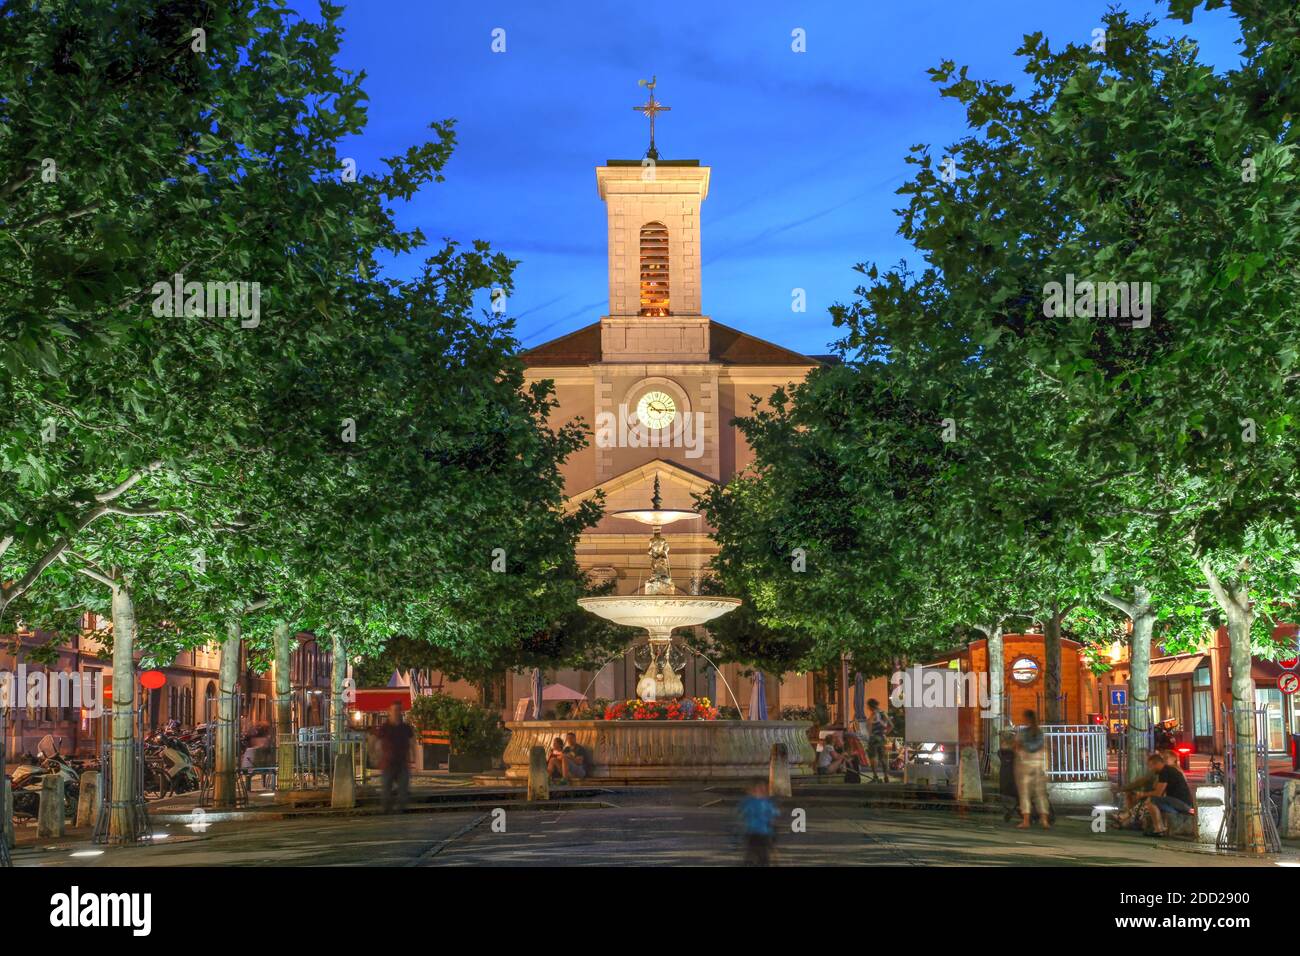 Nachtszene am Place de Marche, Carouge, Genf, Schweiz mit der Kirche Sainte-Croix mit Blick auf den Platz. Stockfoto